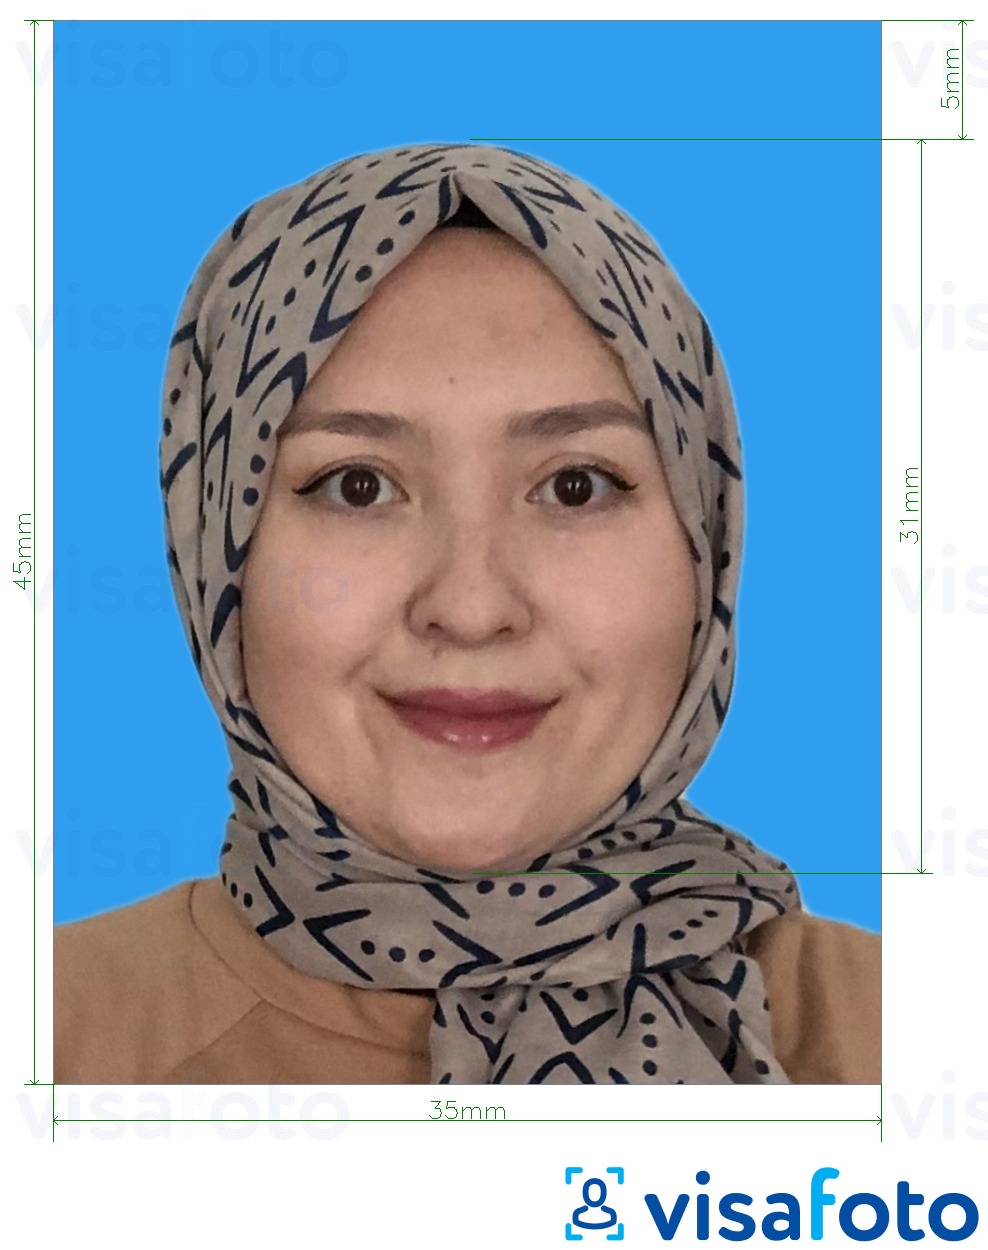 Voorbeeld van foto voor Maleisië Visa 35x45 mm blauwe achtergrondblauwe achtergrond met exacte maatspecificatie